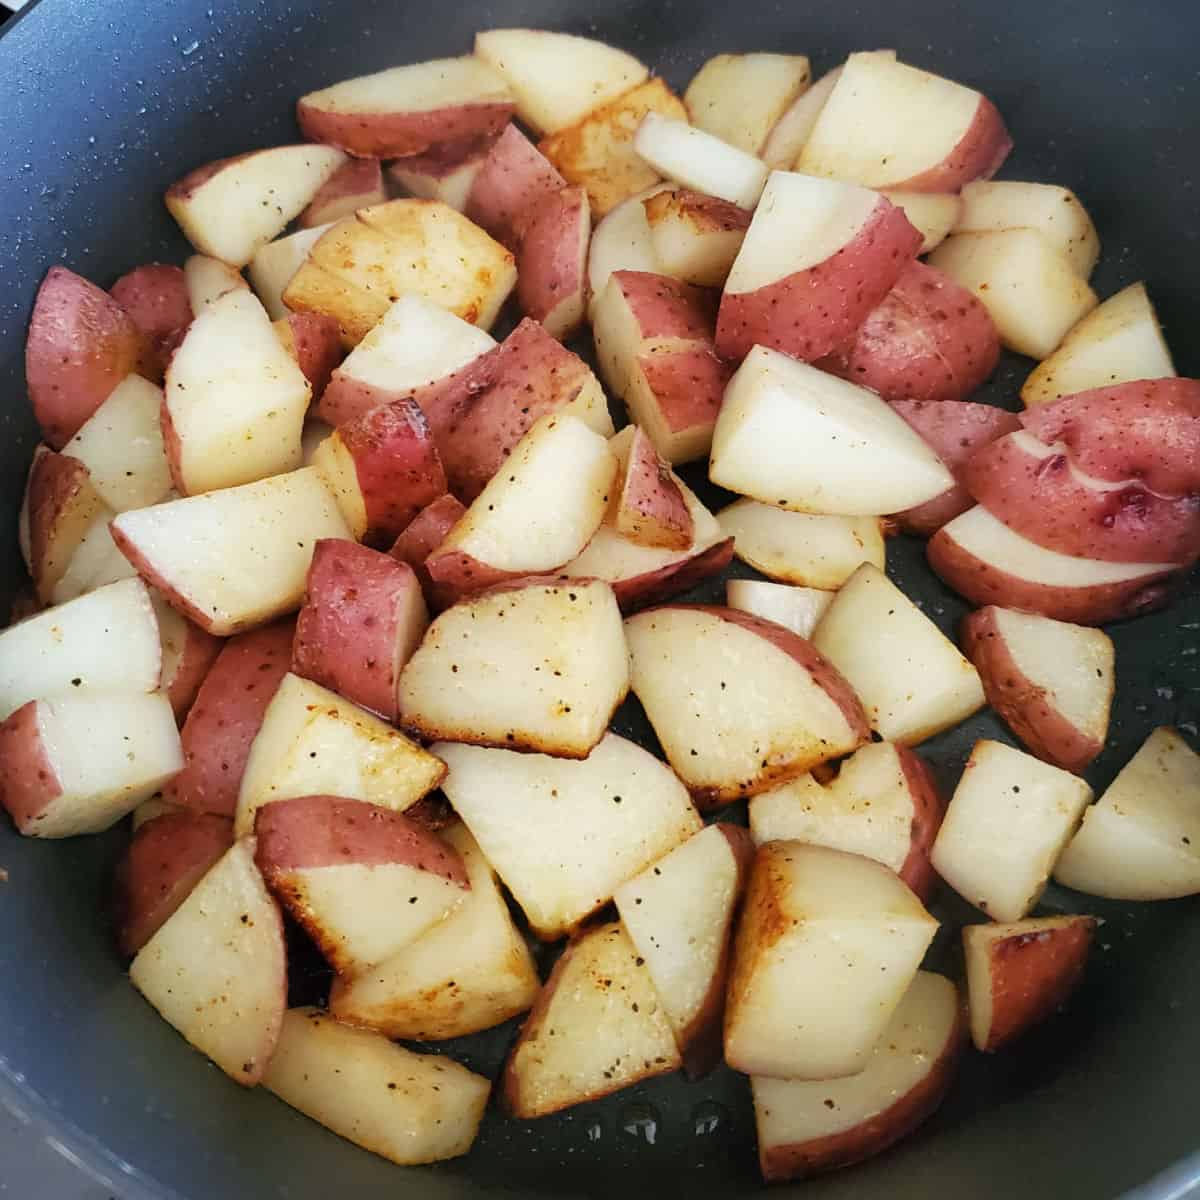 https://www.tammileetips.com/wp-content/uploads/2020/04/Red-Breakfast-Potatoes-Recipe.jpg